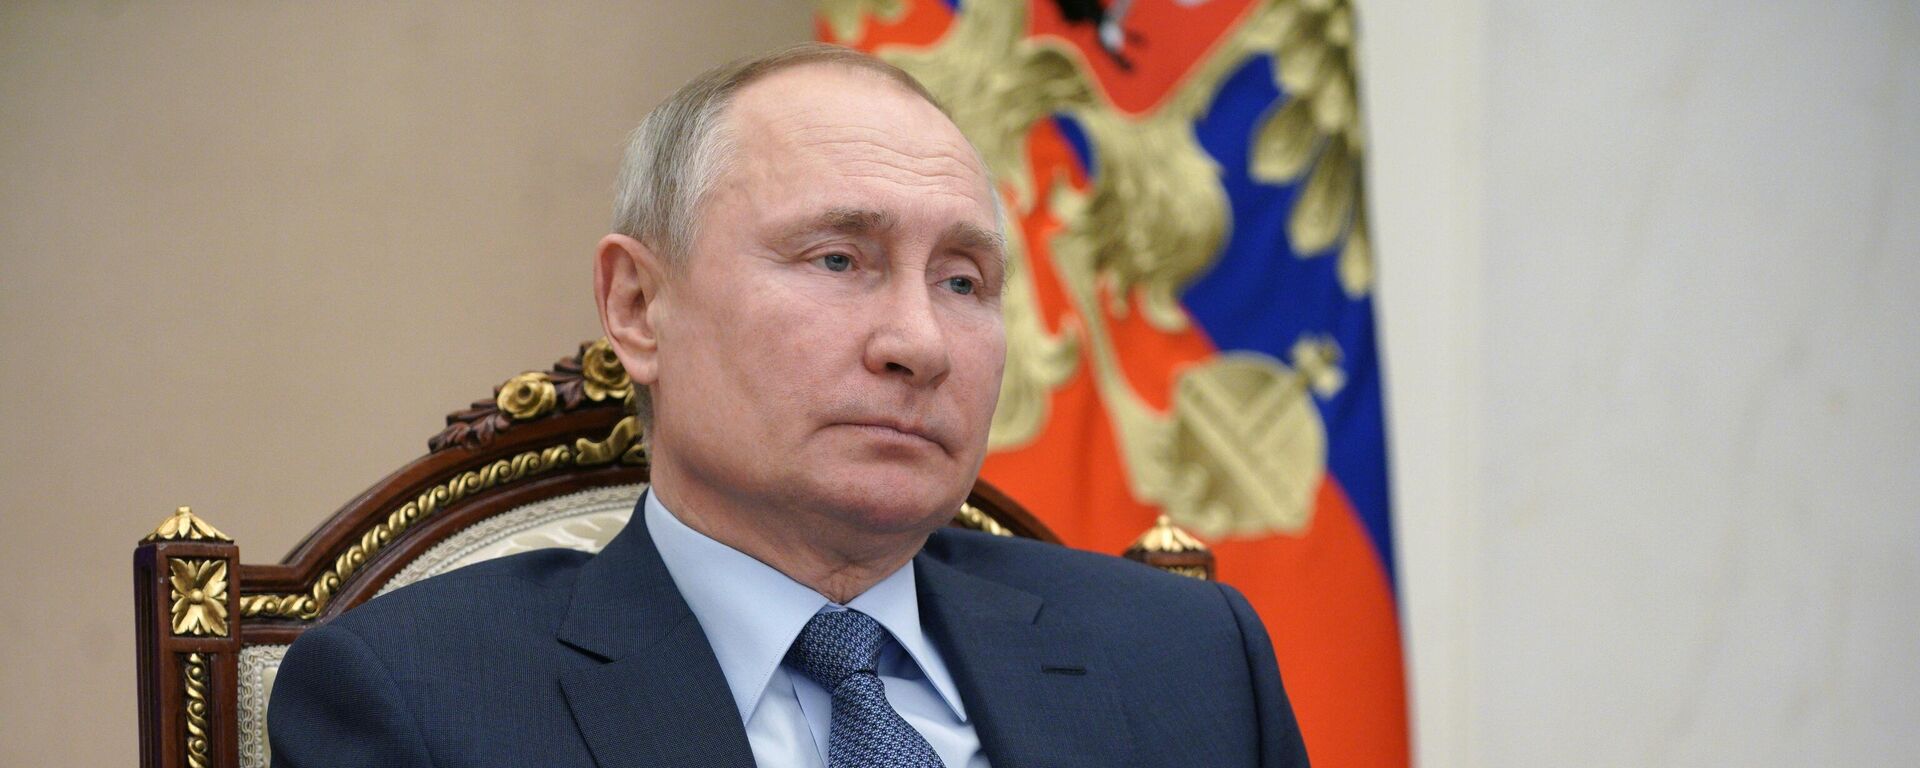 Vladímir Putin, presidente ruso - Sputnik Mundo, 1920, 27.06.2021